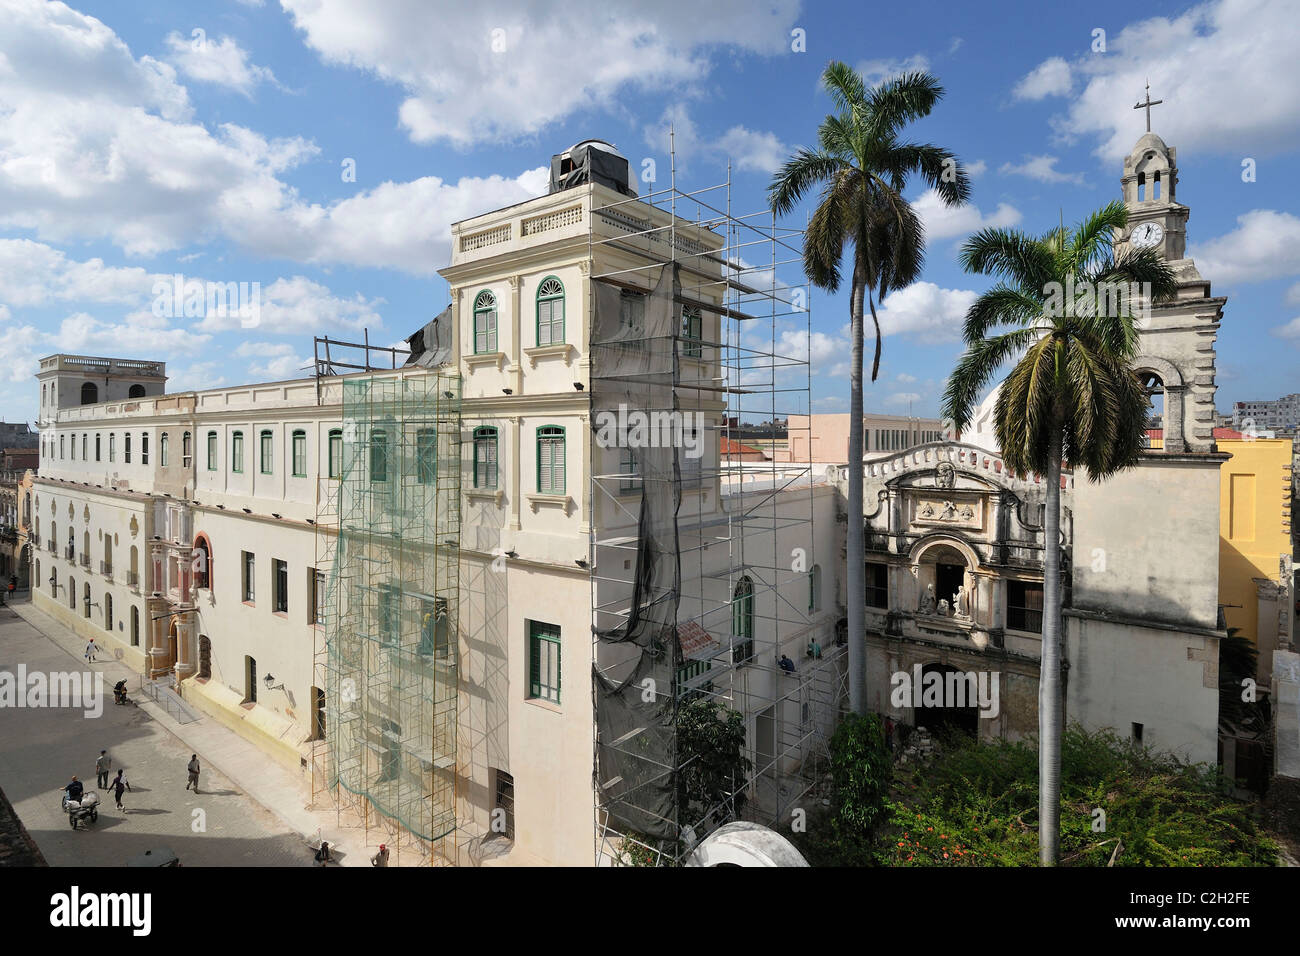 Havanna. Kuba. Iglesia y Convento de Nuestra Señora de Belen (Kirche und Kloster Unserer Lieben Frau von Bethlehem), Habana Vieja/Altstadt Havannas. Stockfoto